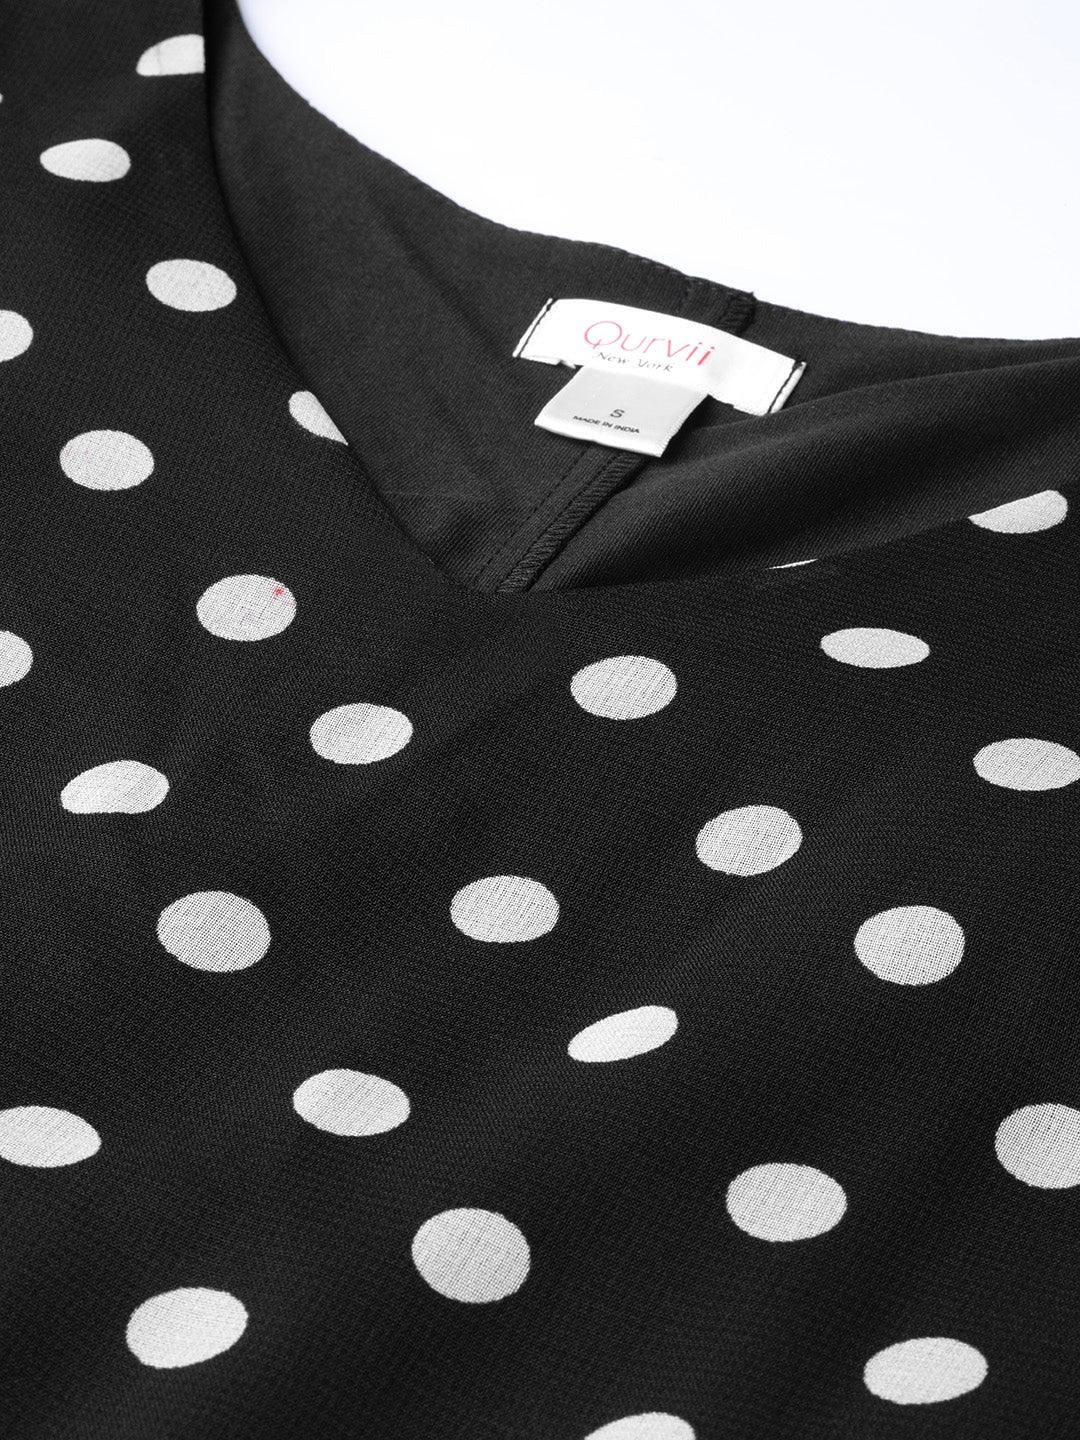 Qurvii Women Black White Polka Dot Print A-Line Dress - Qurvii India